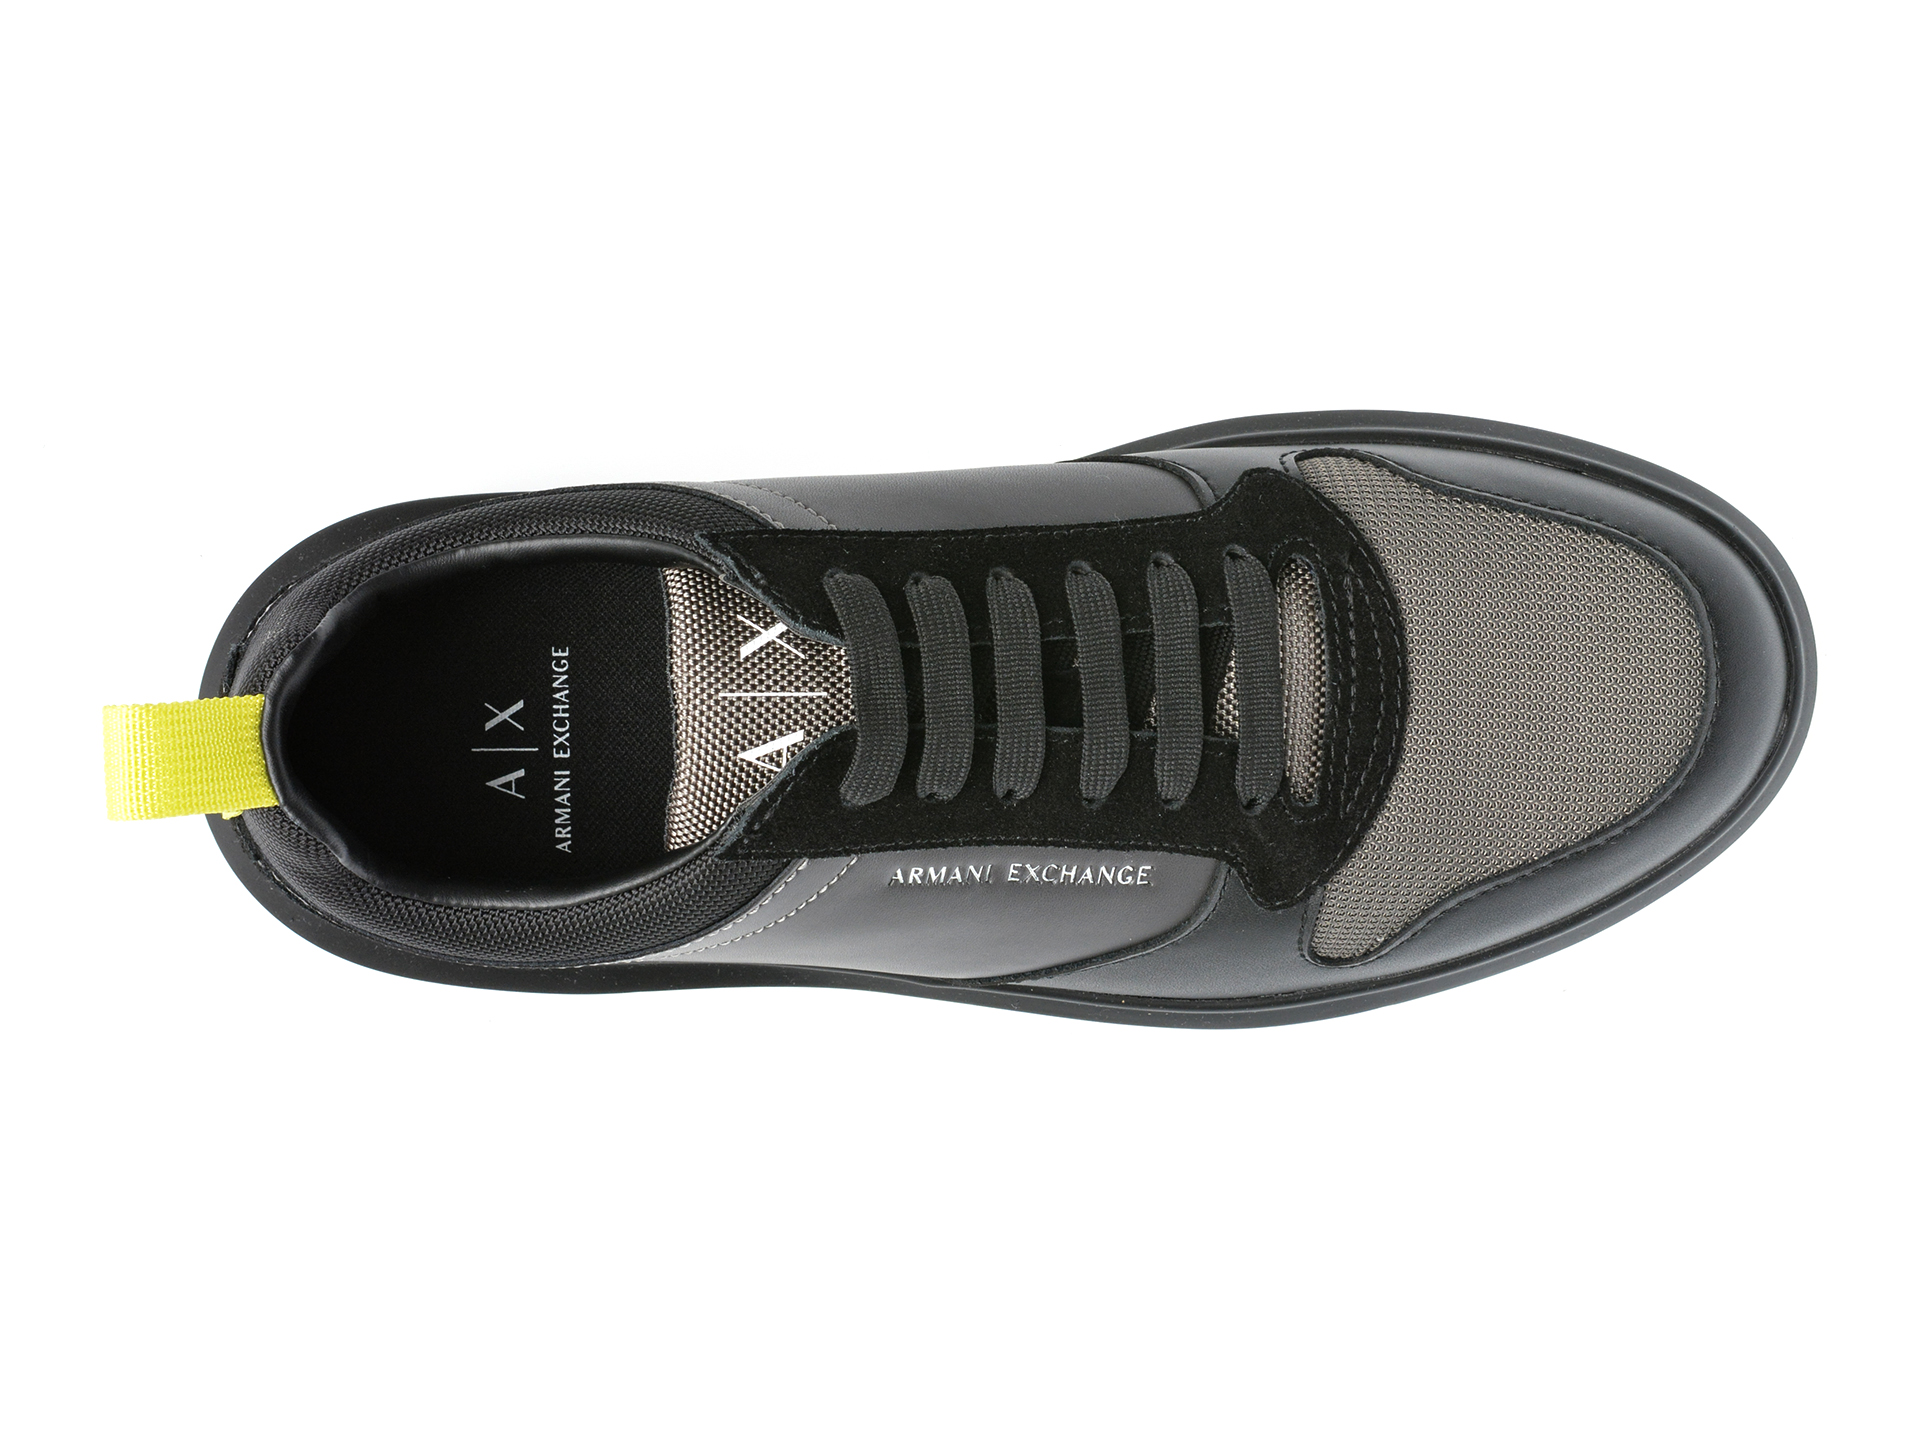 Poze Pantofi sport ARMANI EXCHANGE negri, XUX122, din material textil si piele naturala Tezyo